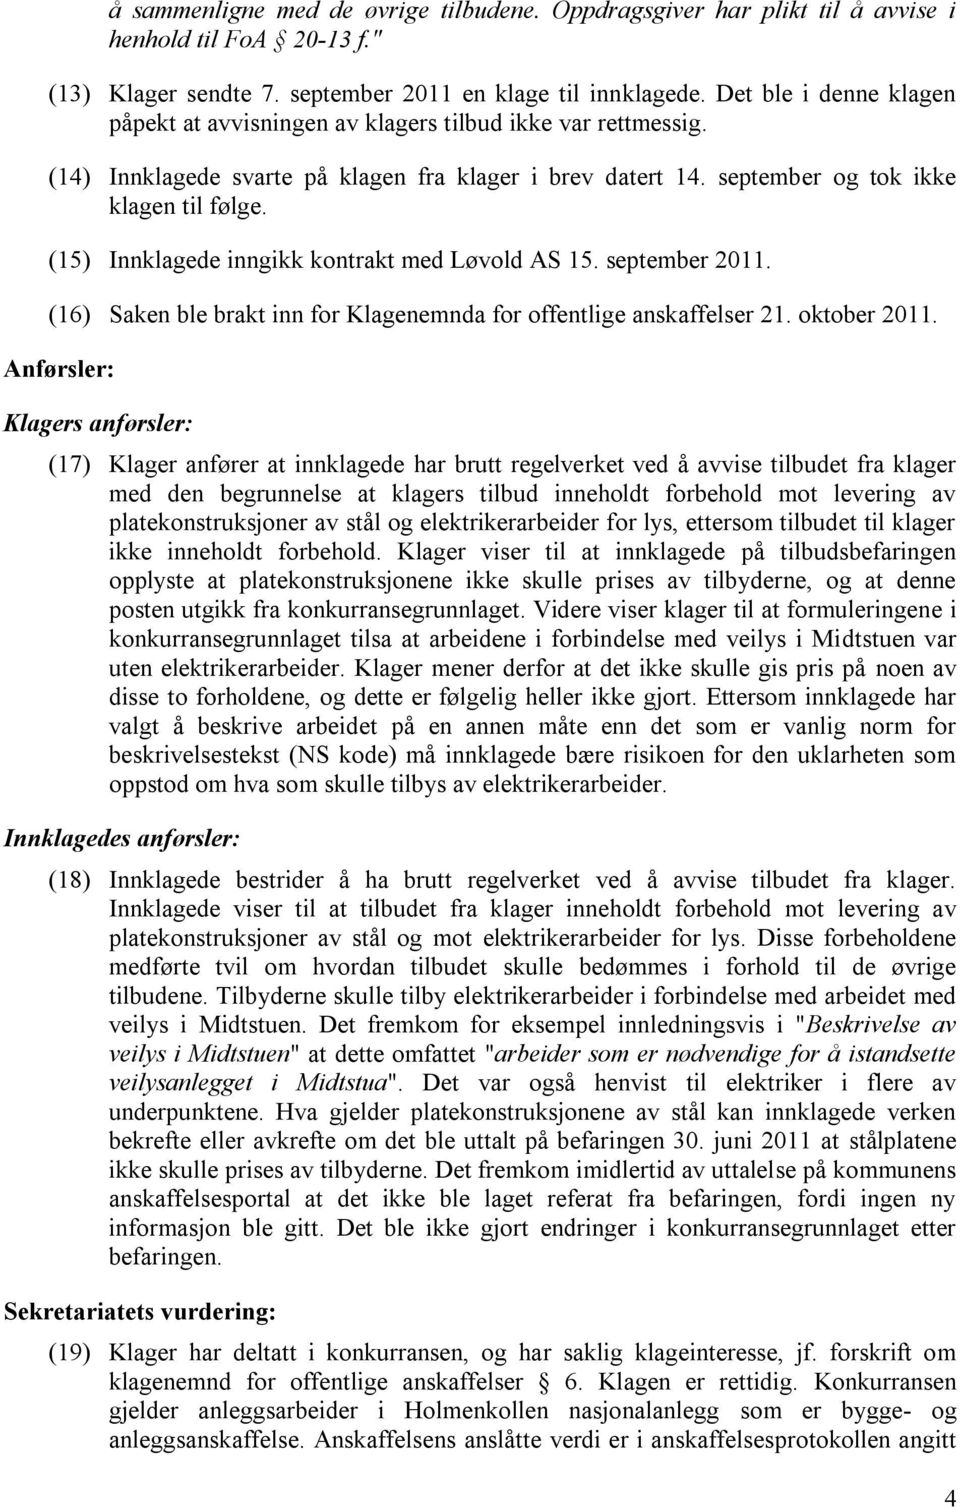 (15) Innklagede inngikk kontrakt med Løvold AS 15. september 2011. (16) Saken ble brakt inn for Klagenemnda for offentlige anskaffelser 21. oktober 2011.